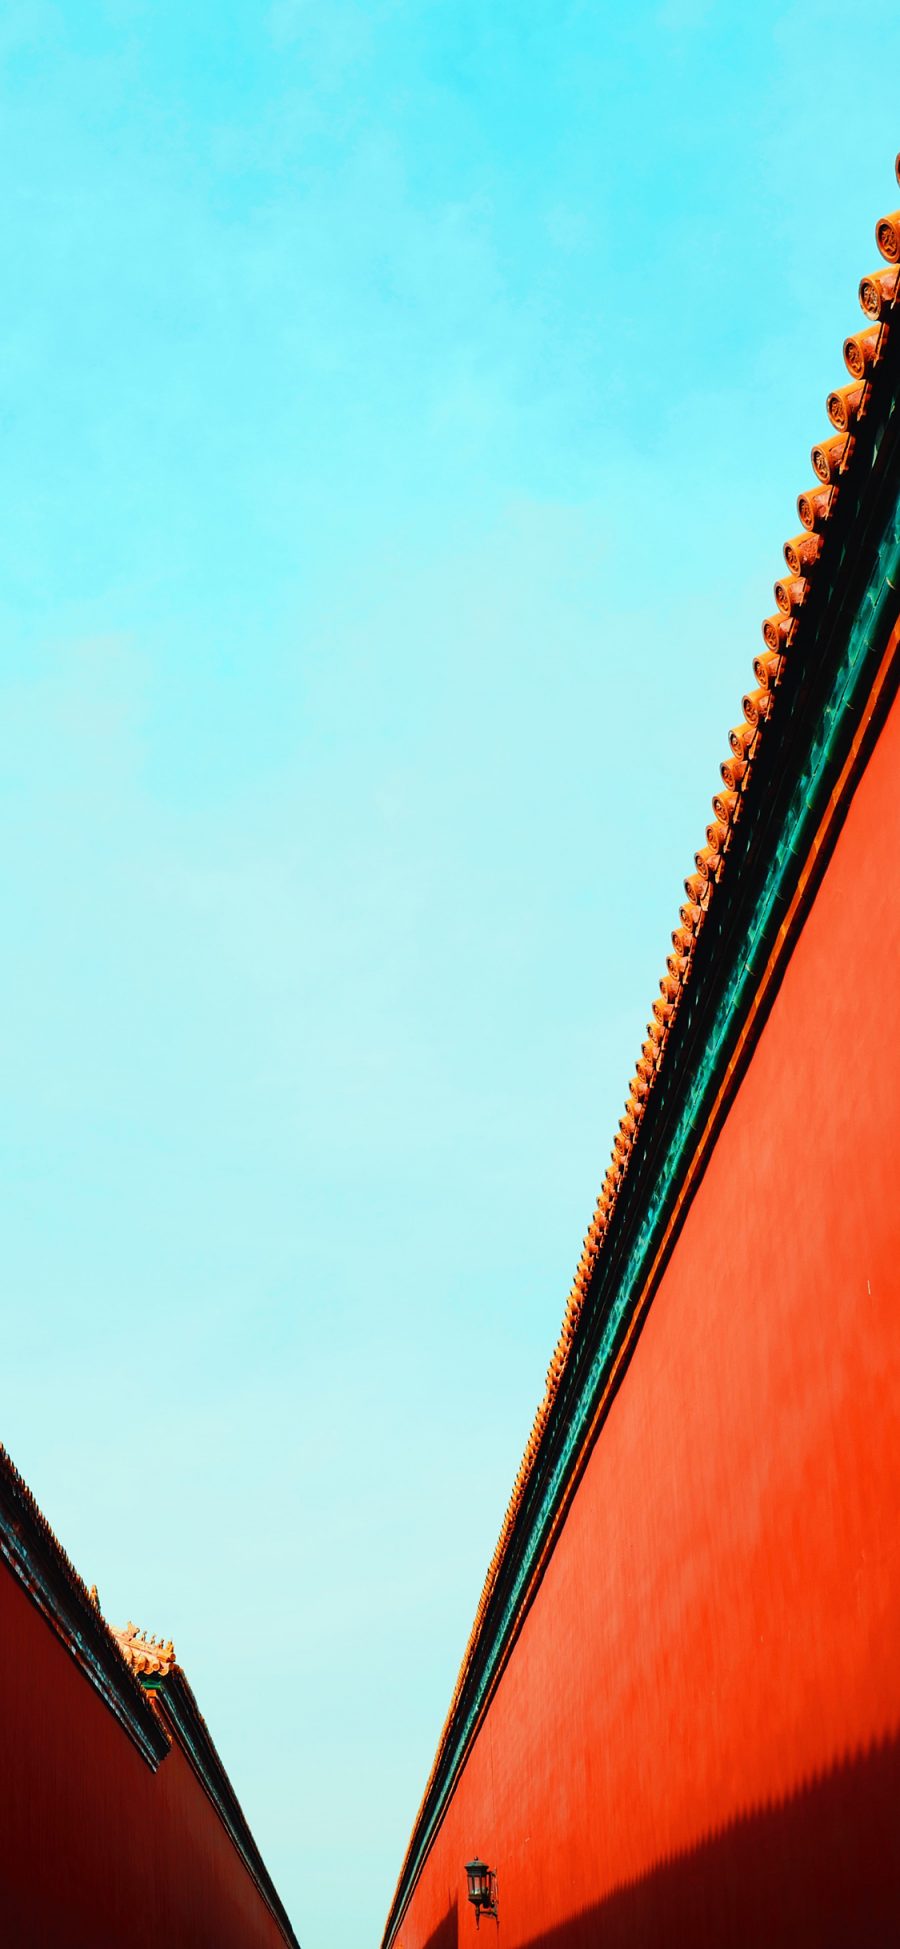 [2436×1125]故宫 建筑 红墙 天空 苹果手机壁纸图片